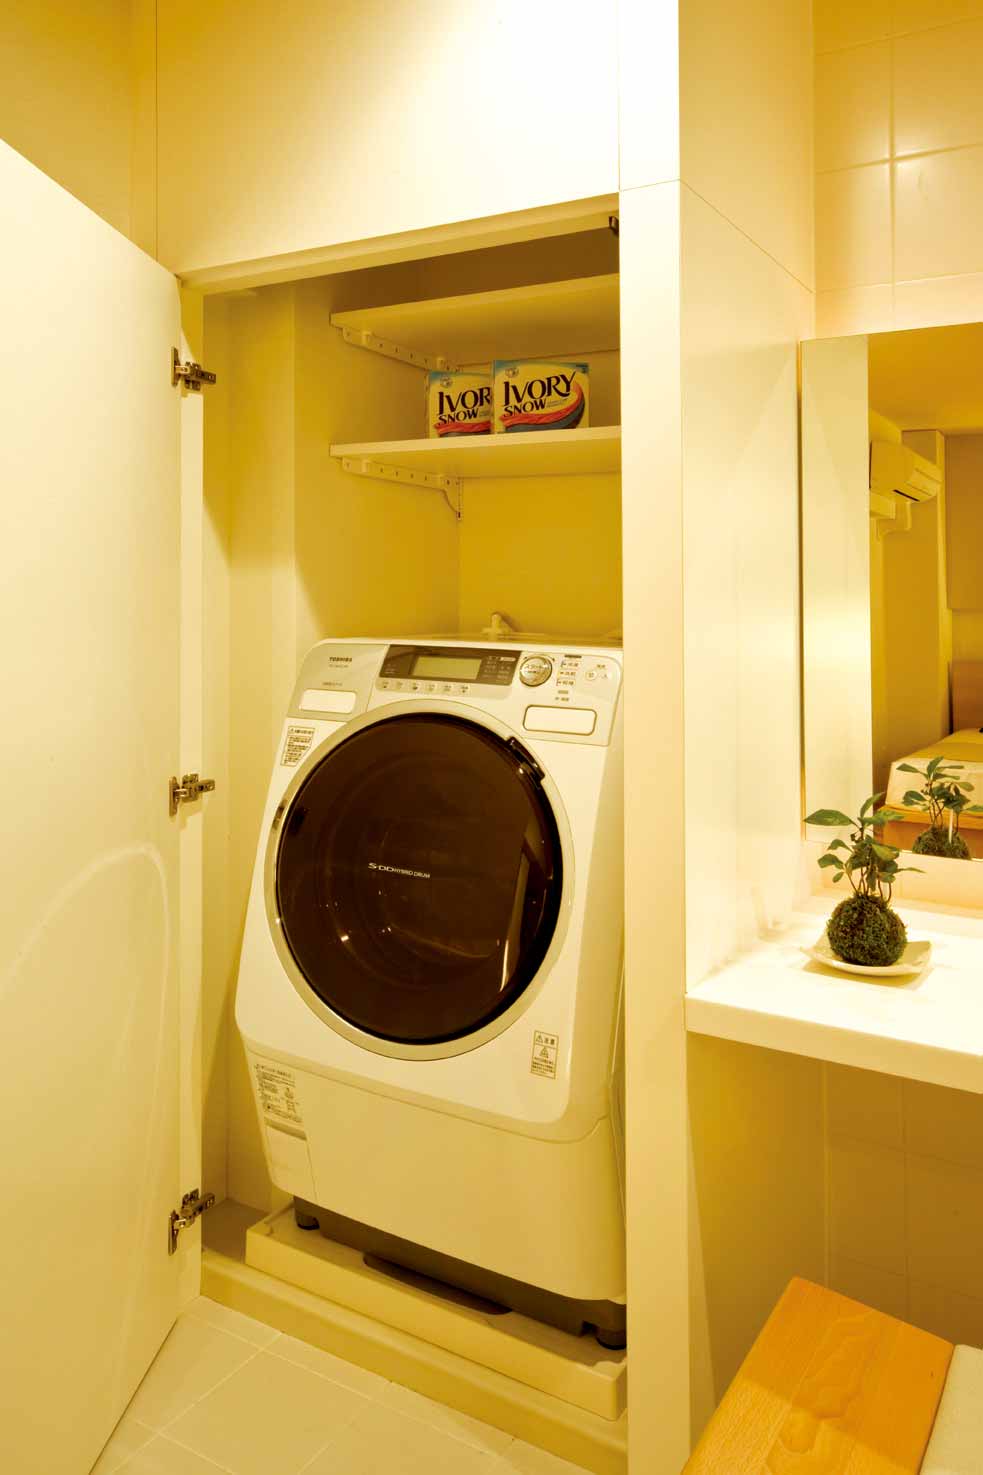 洗衣机也有了自己的小房间，不仅令整体空间看起来简约不琐碎，洗衣服的时候还能隔离部分噪音。